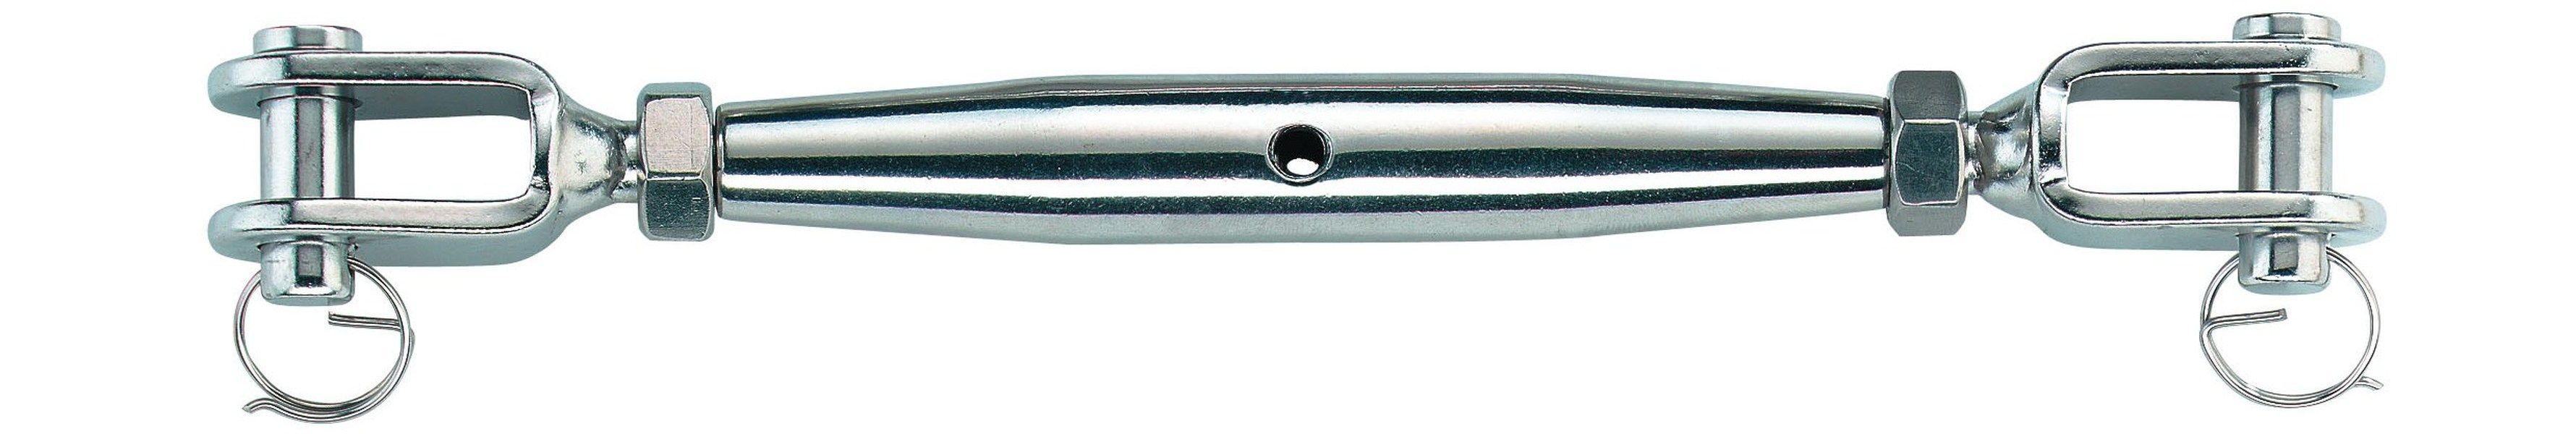 SEILFLECHTER - NIRO-Wantenspanner M8 für 4 mm Seil